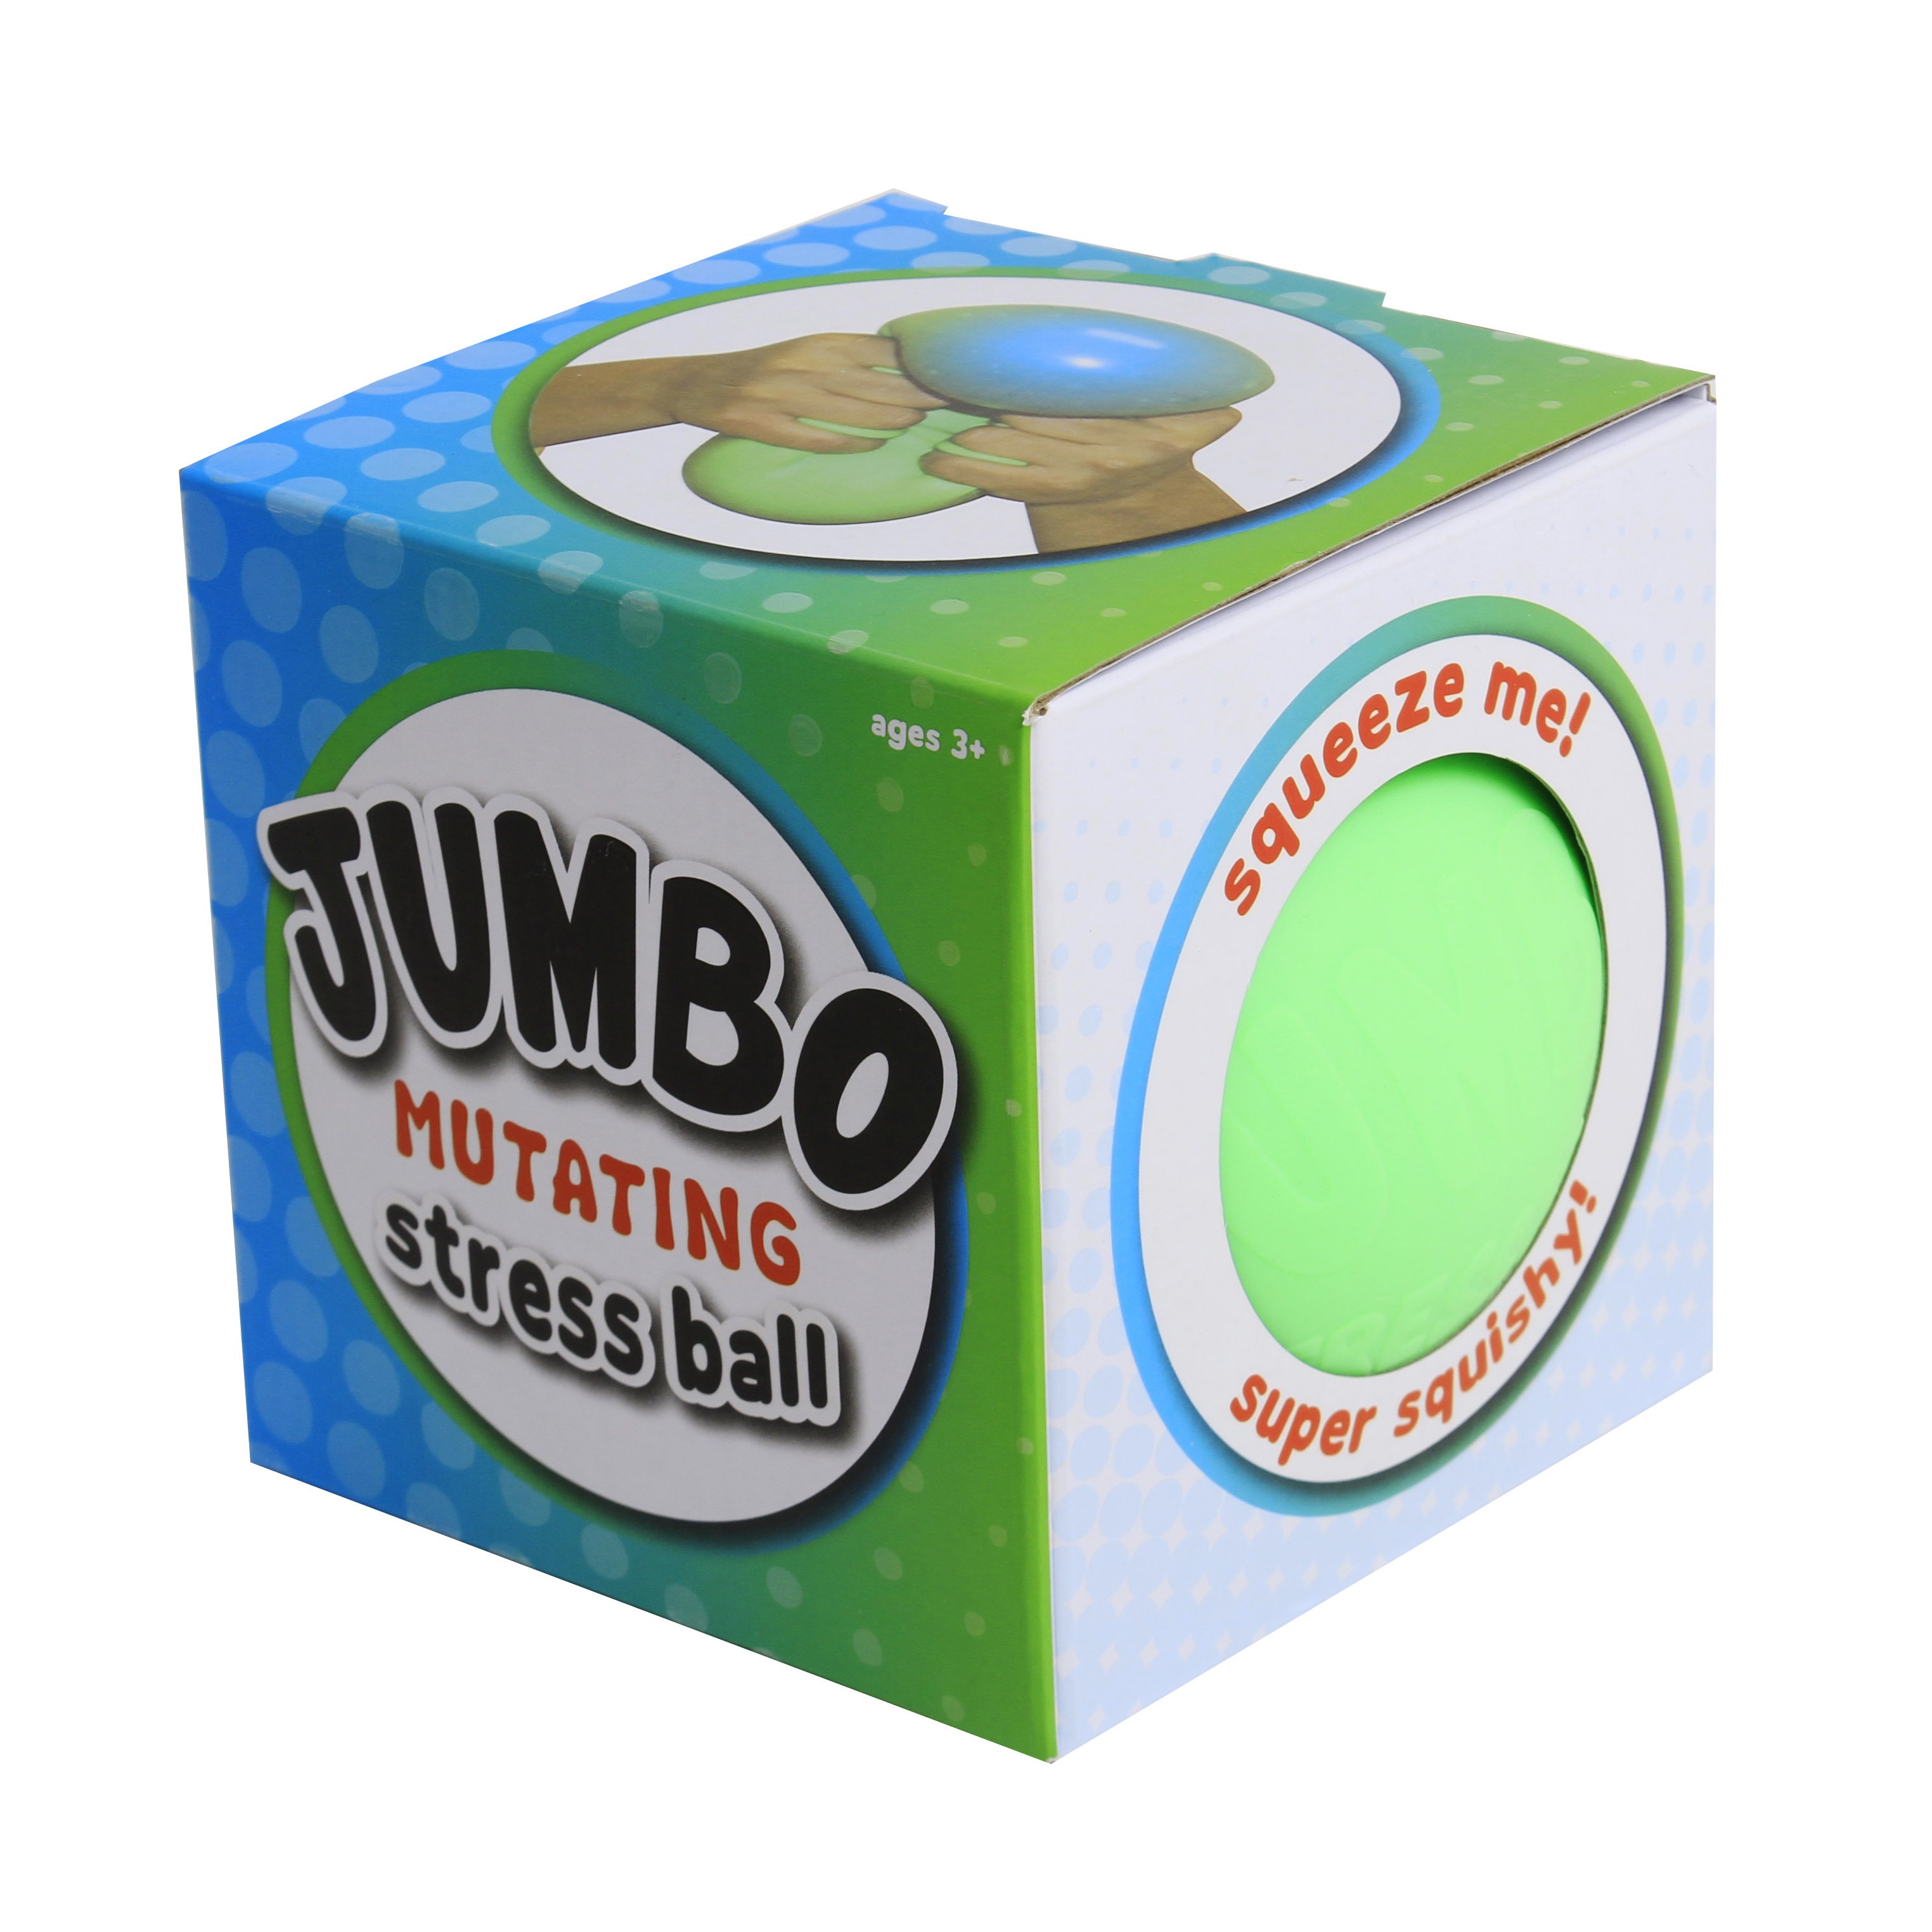 Jumbo Stress ball